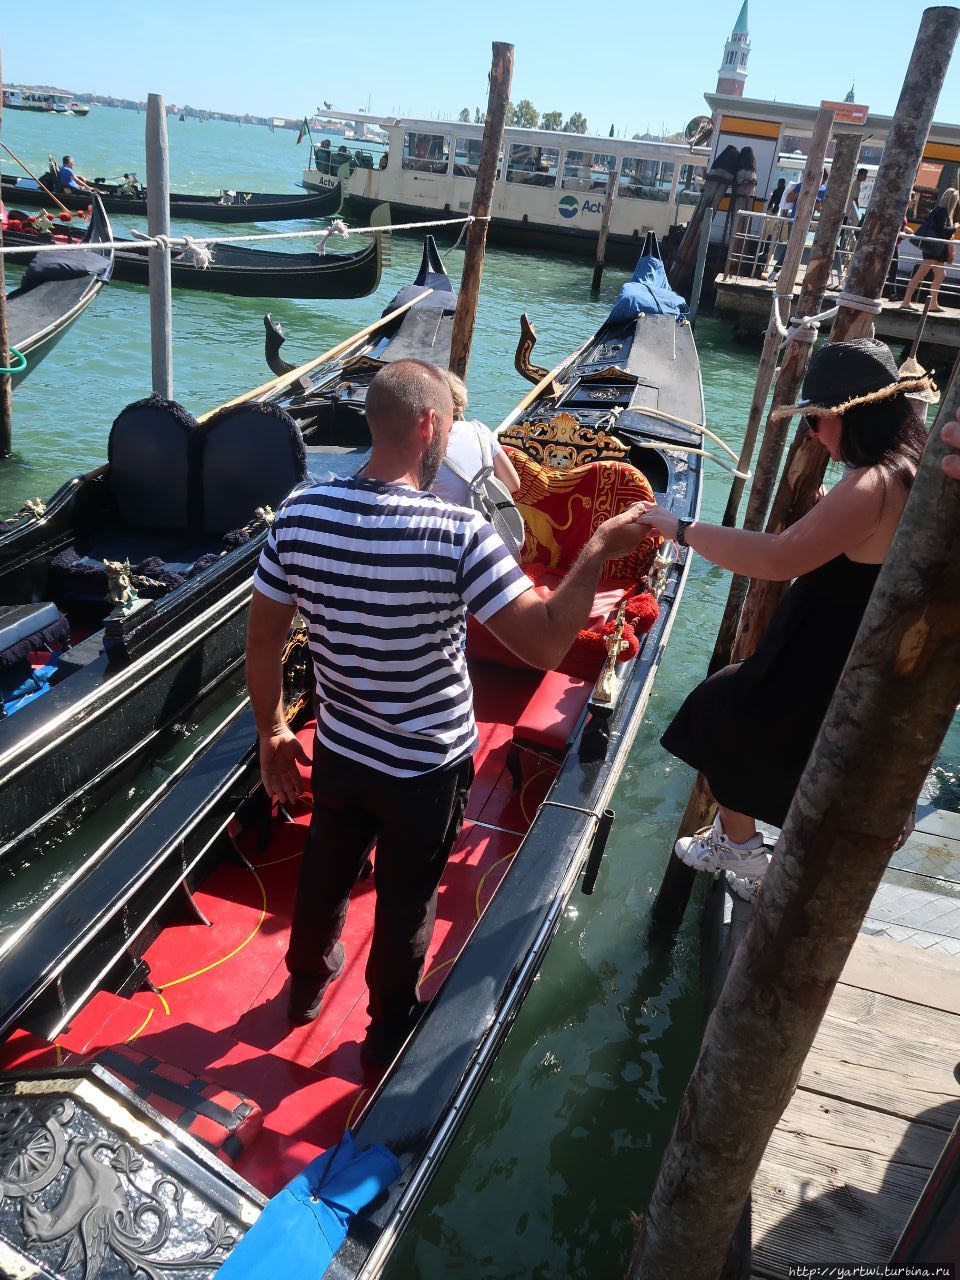 Гондола — традиционная венецианская гребная лодка. Является одним из символов Венеции. Исторически являлась главным средством передвижения по каналам города, в настоящее время служит для развлечения многочисленных туристов. Венеция, Италия